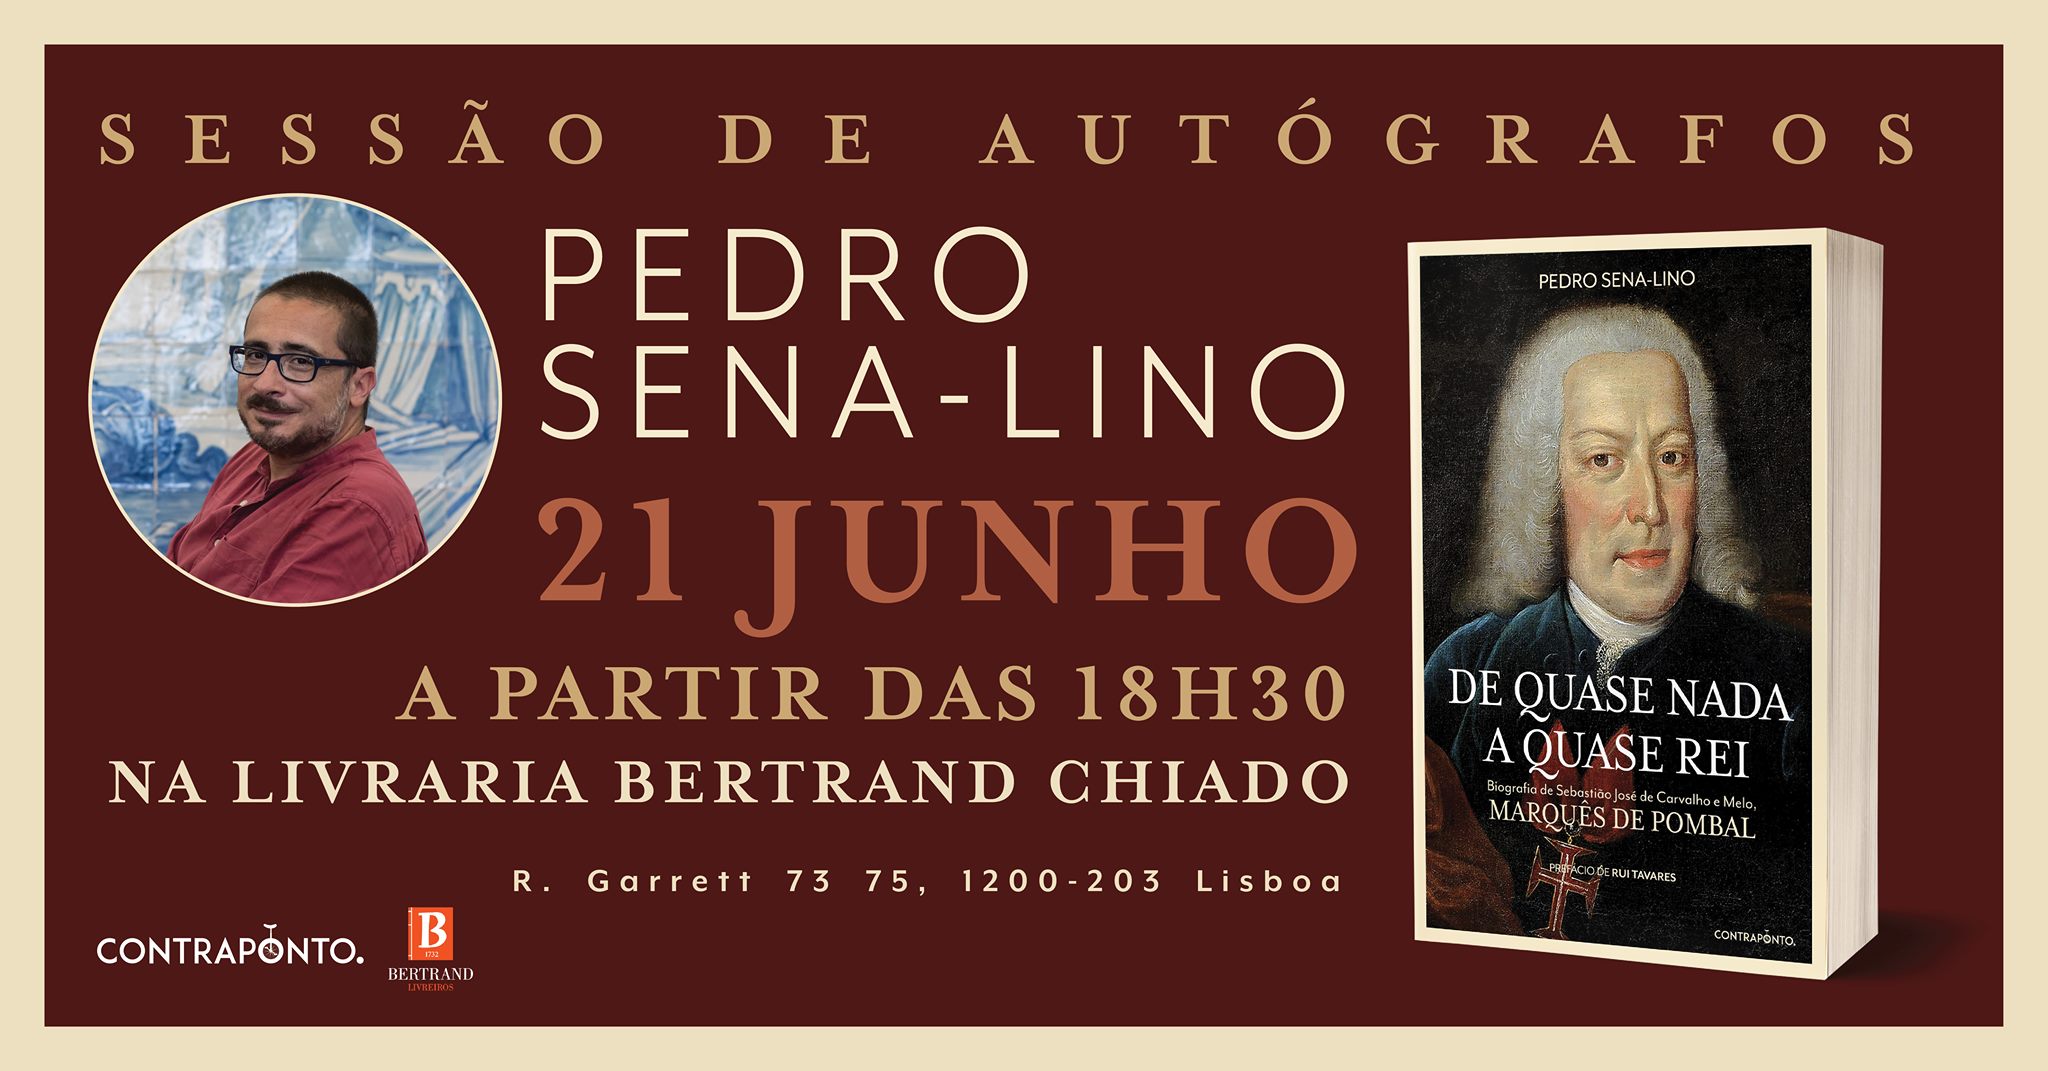 Sessão de autógrafos com Pedro Sena-Lino